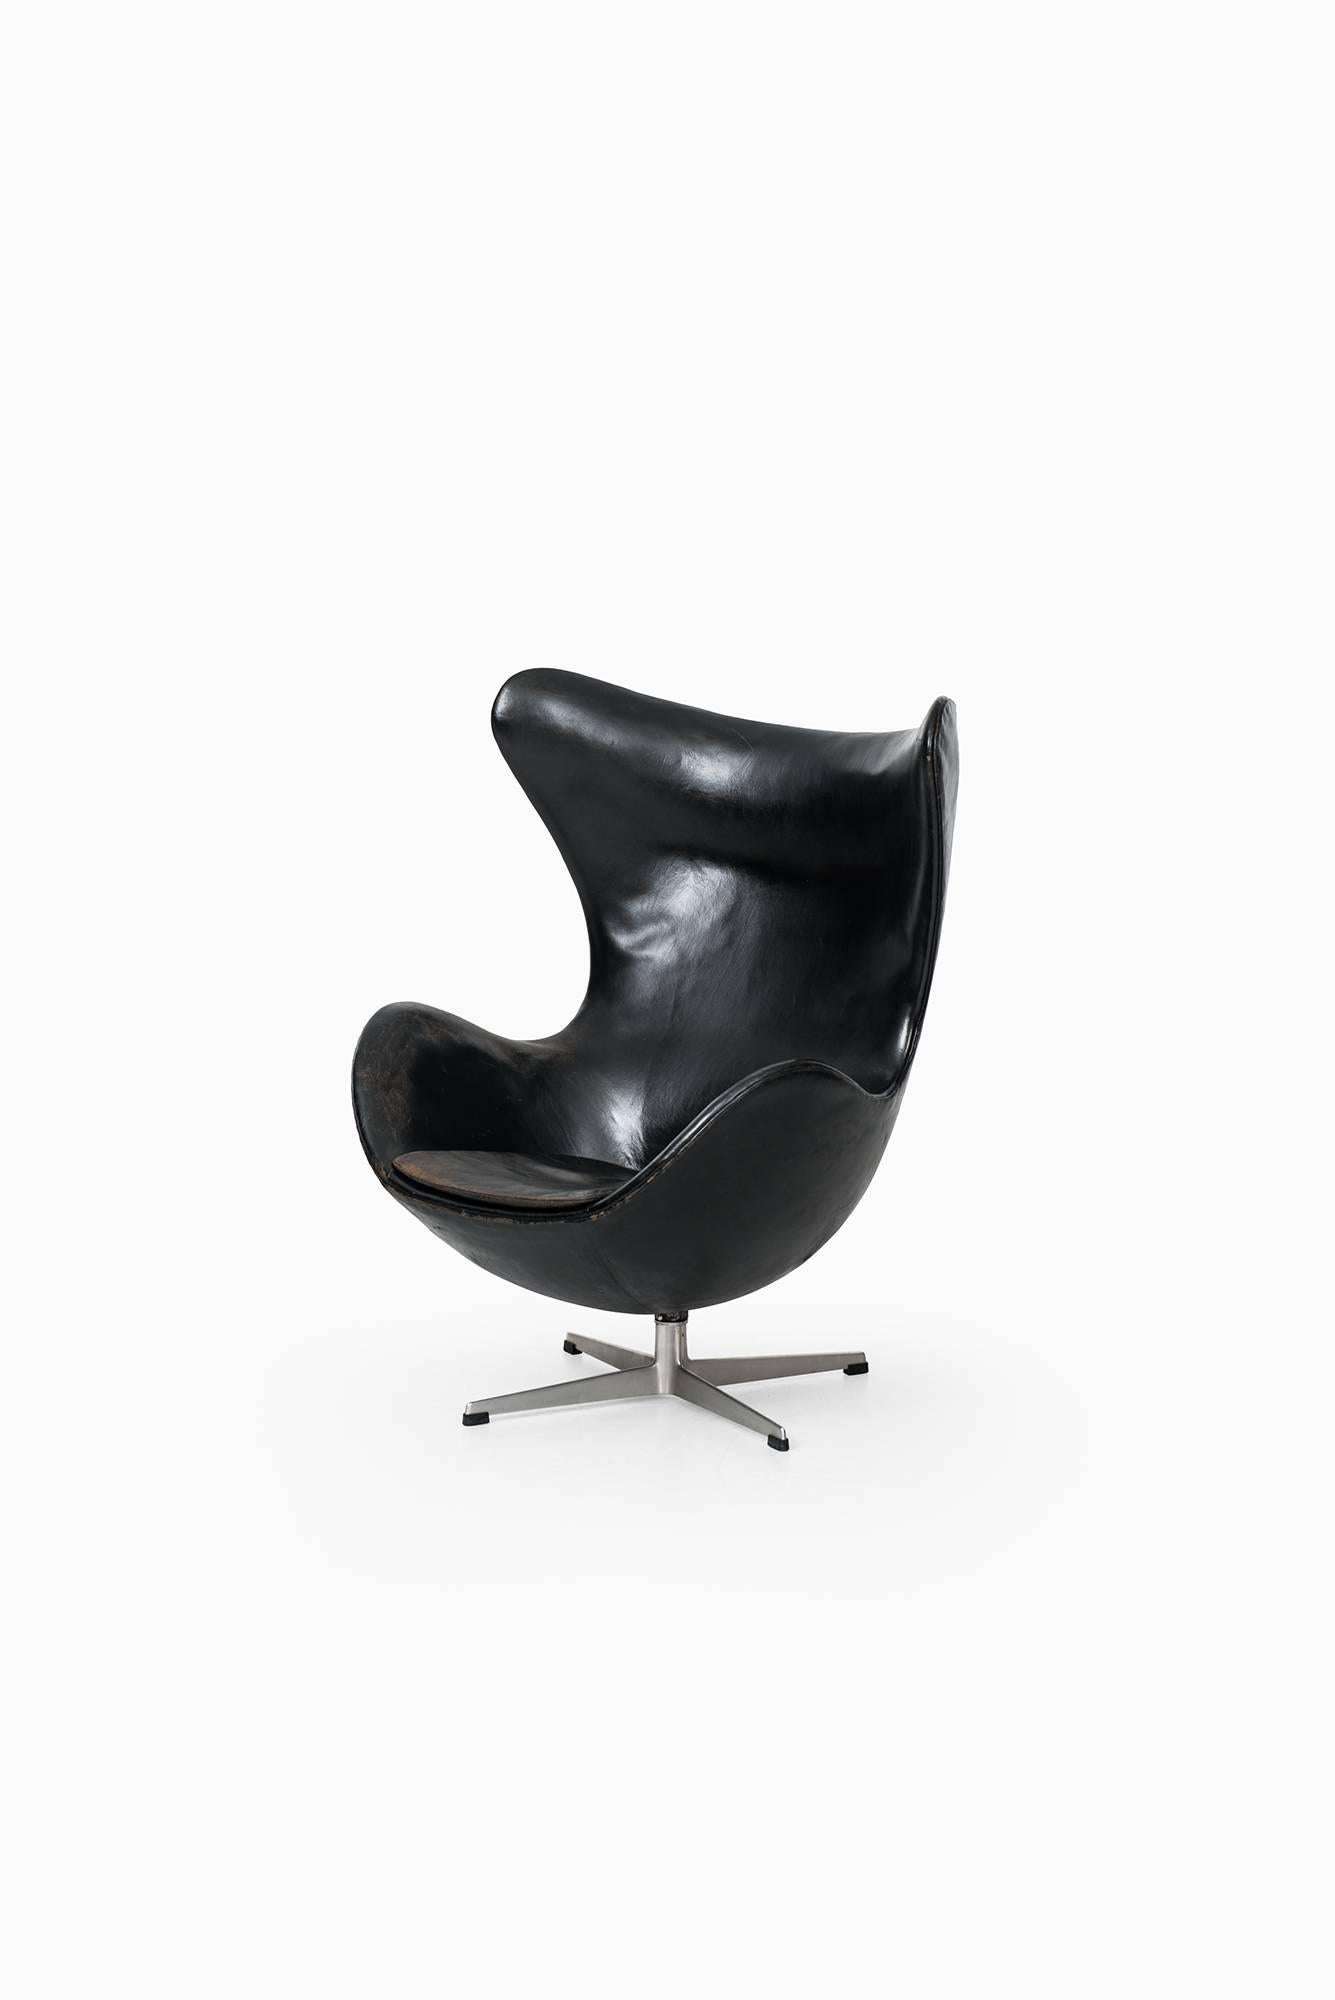 Arne Jacobsen Egg Chair Model 3316 by Fritz Hansen in Denmark In Excellent Condition In Limhamn, Skåne län